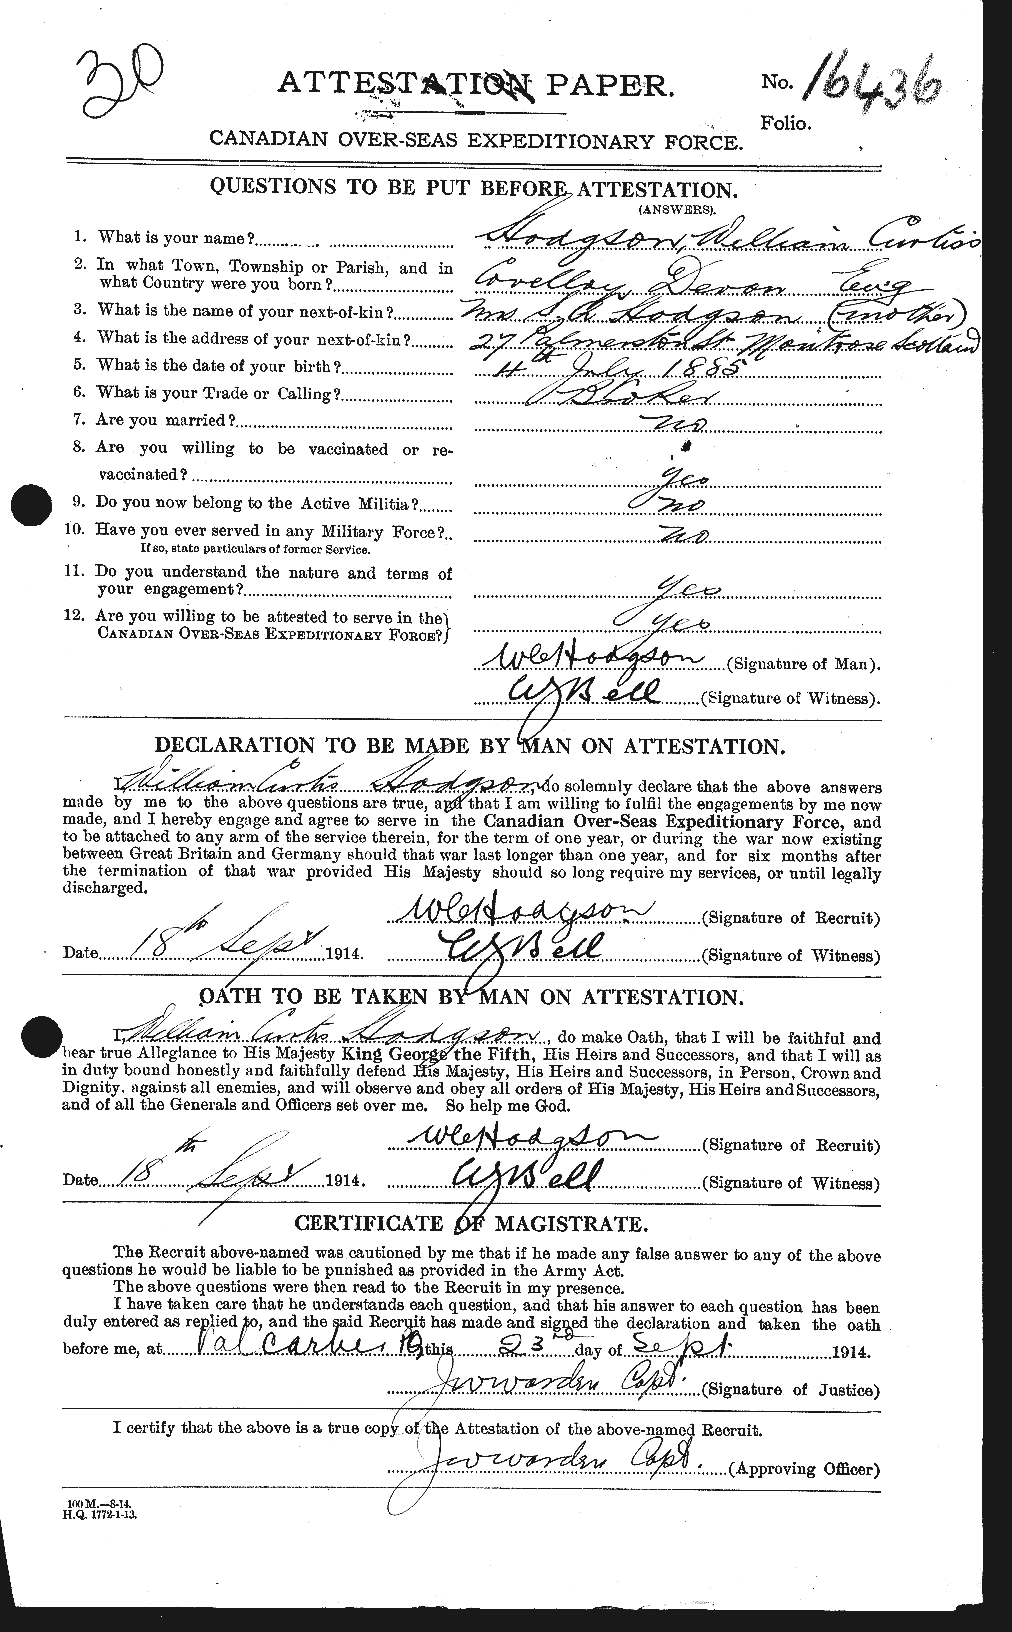 Dossiers du Personnel de la Première Guerre mondiale - CEC 395569a